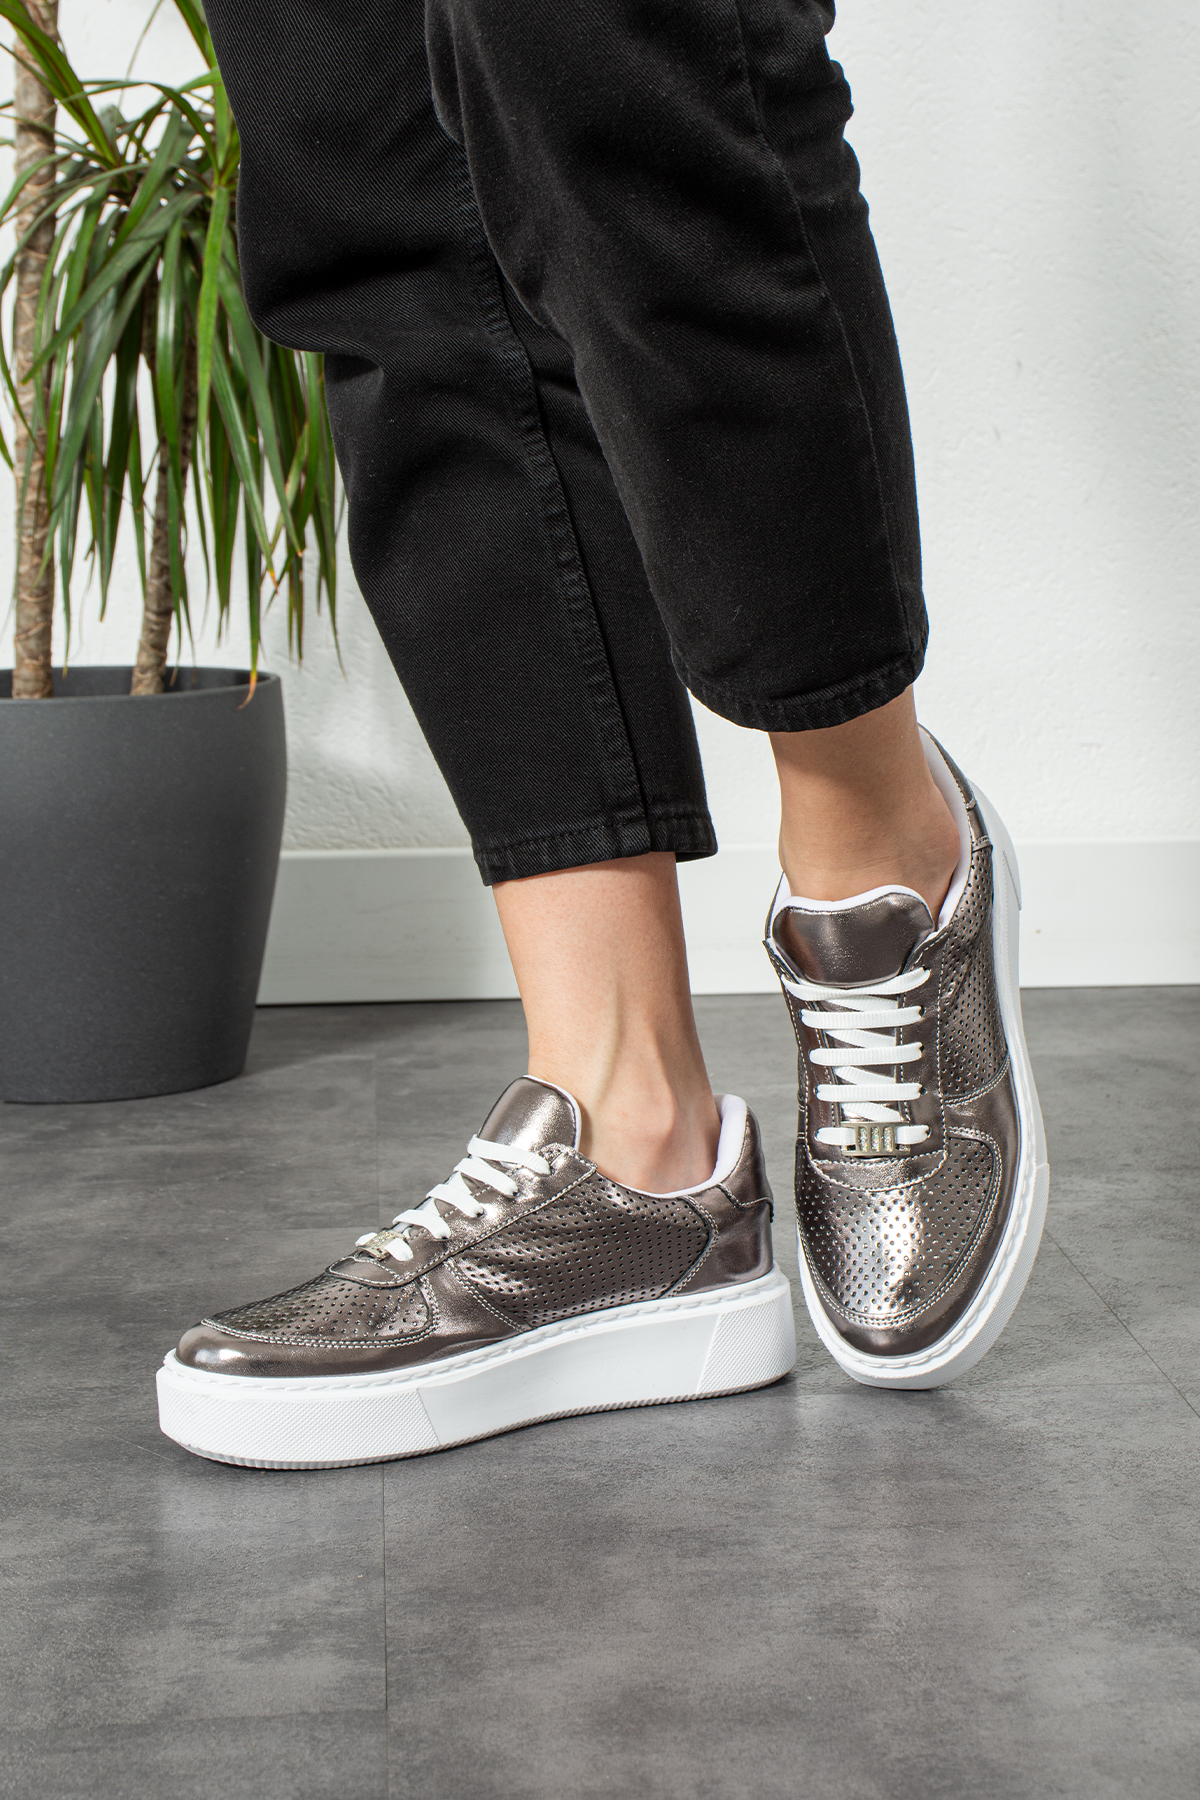 Metalik Platin Dikişli Taban Taş Detay Bağcıklı Günlük Ortapedik İç Taban Kadın Sneaker